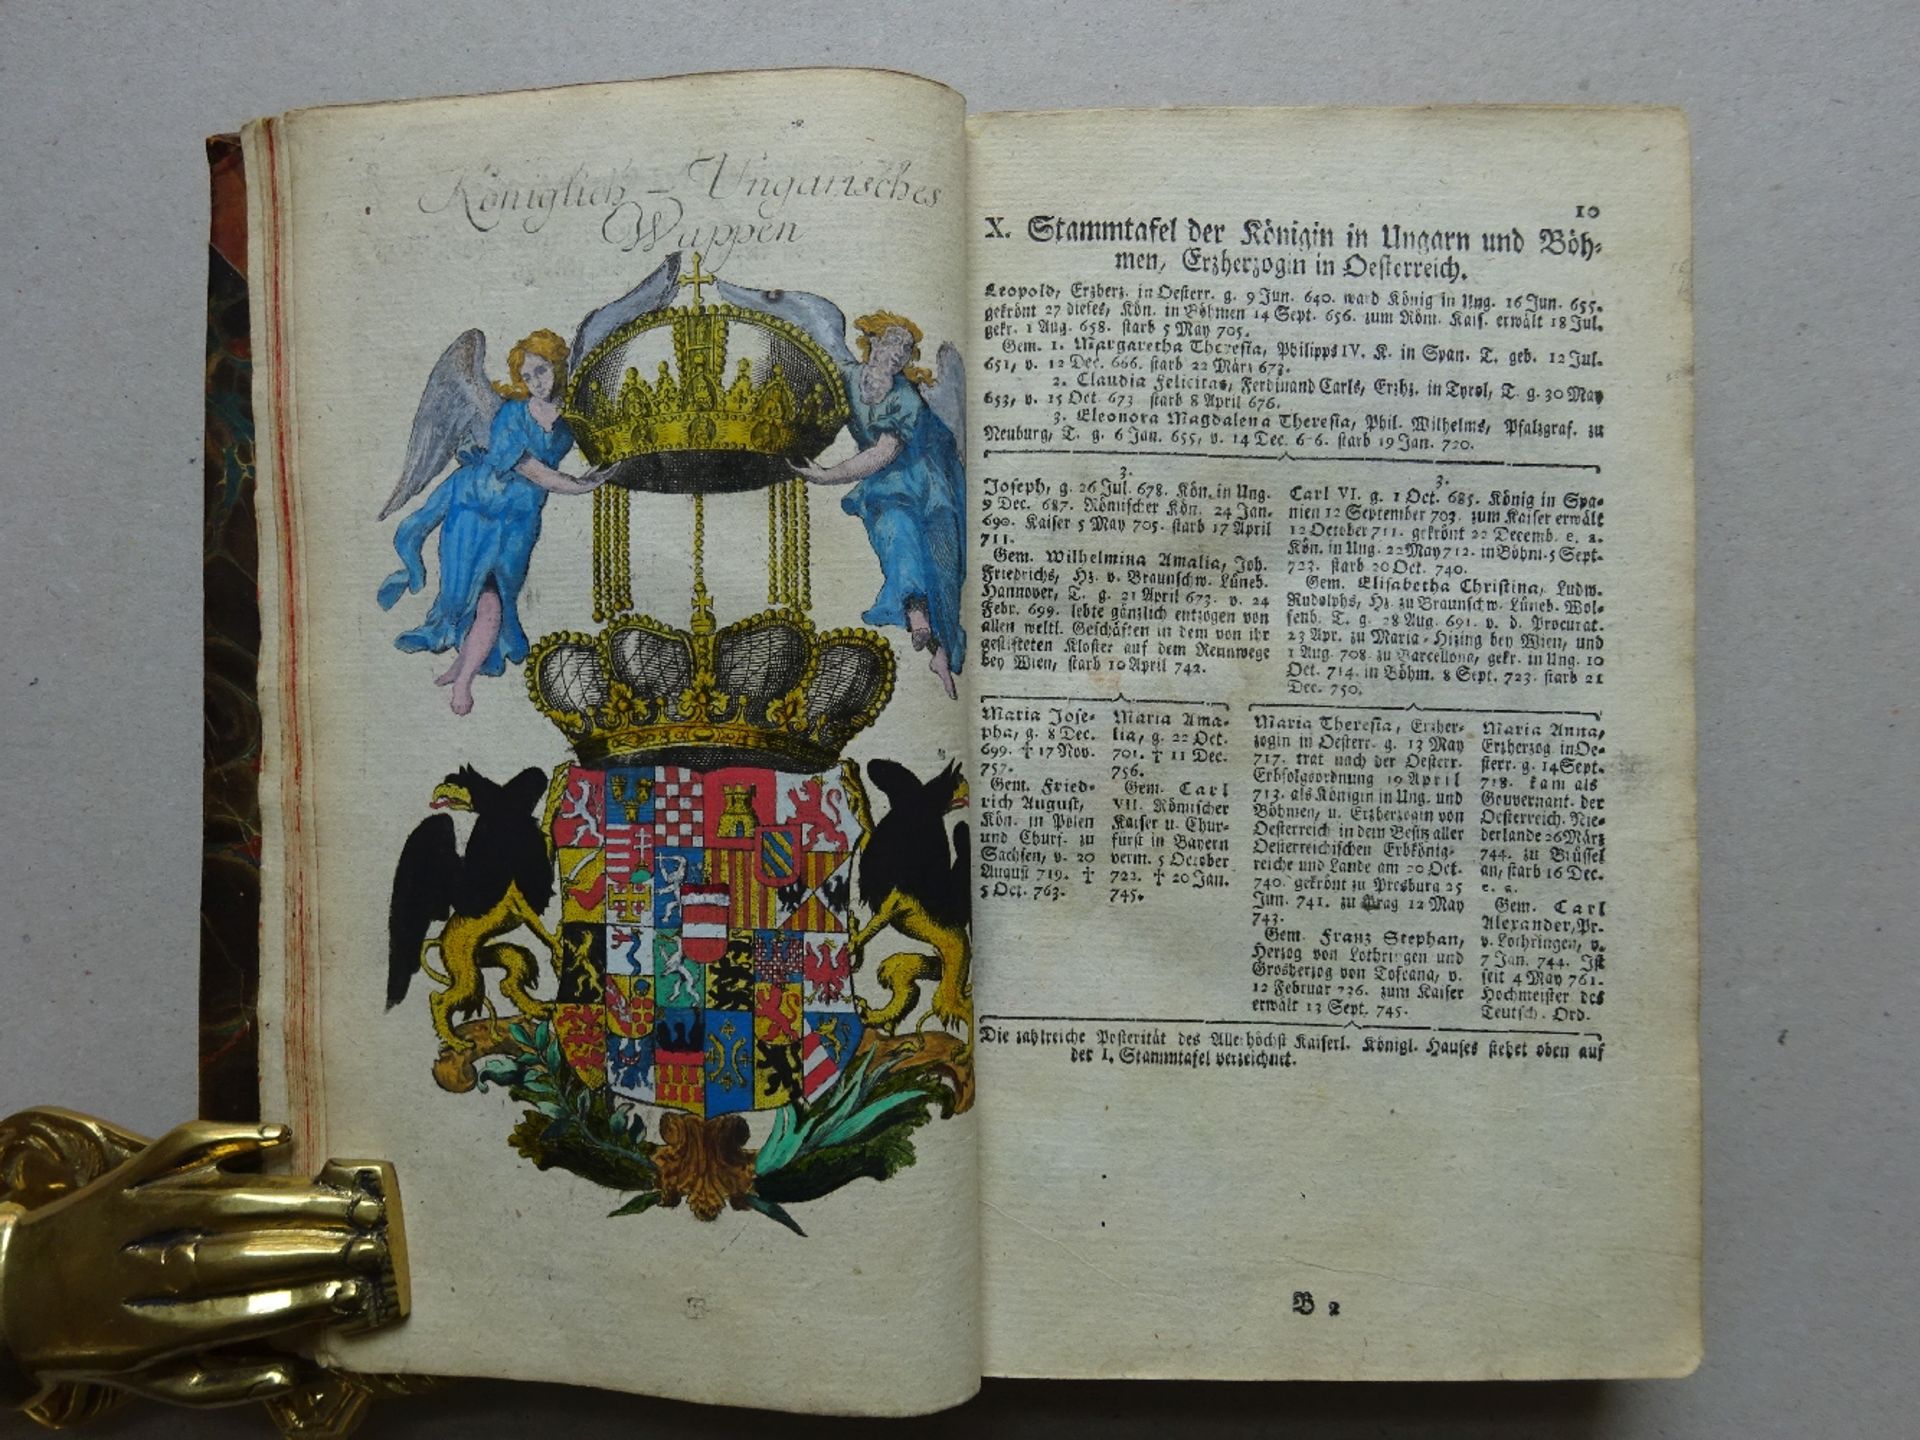 Gatterer - Wappen-Calender 1765 - Image 3 of 6